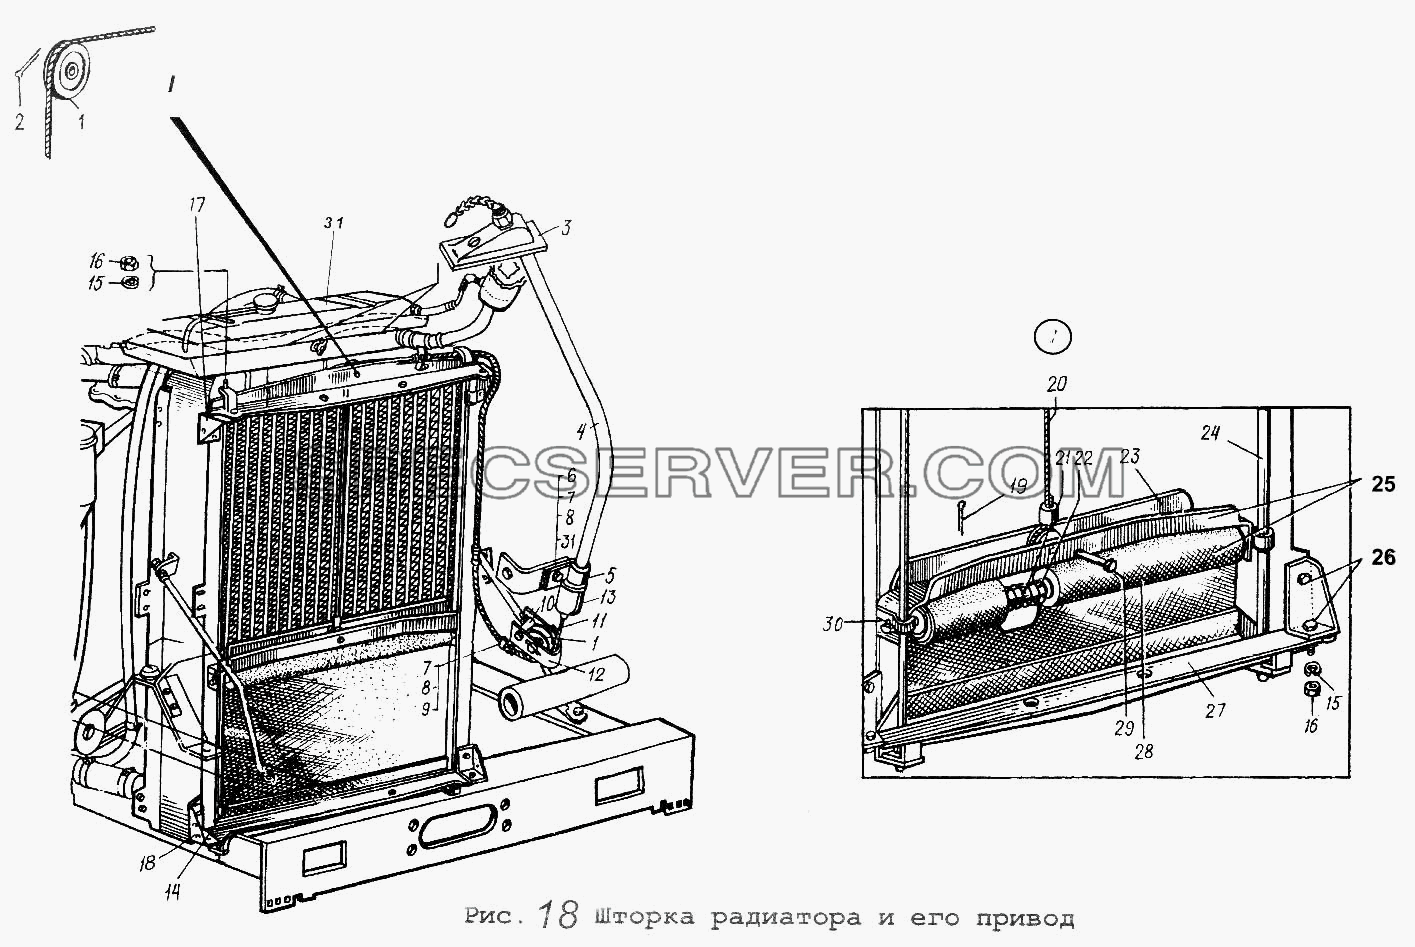 Шторка радиатора и его привод для МАЗ-64229 (список запасных частей)